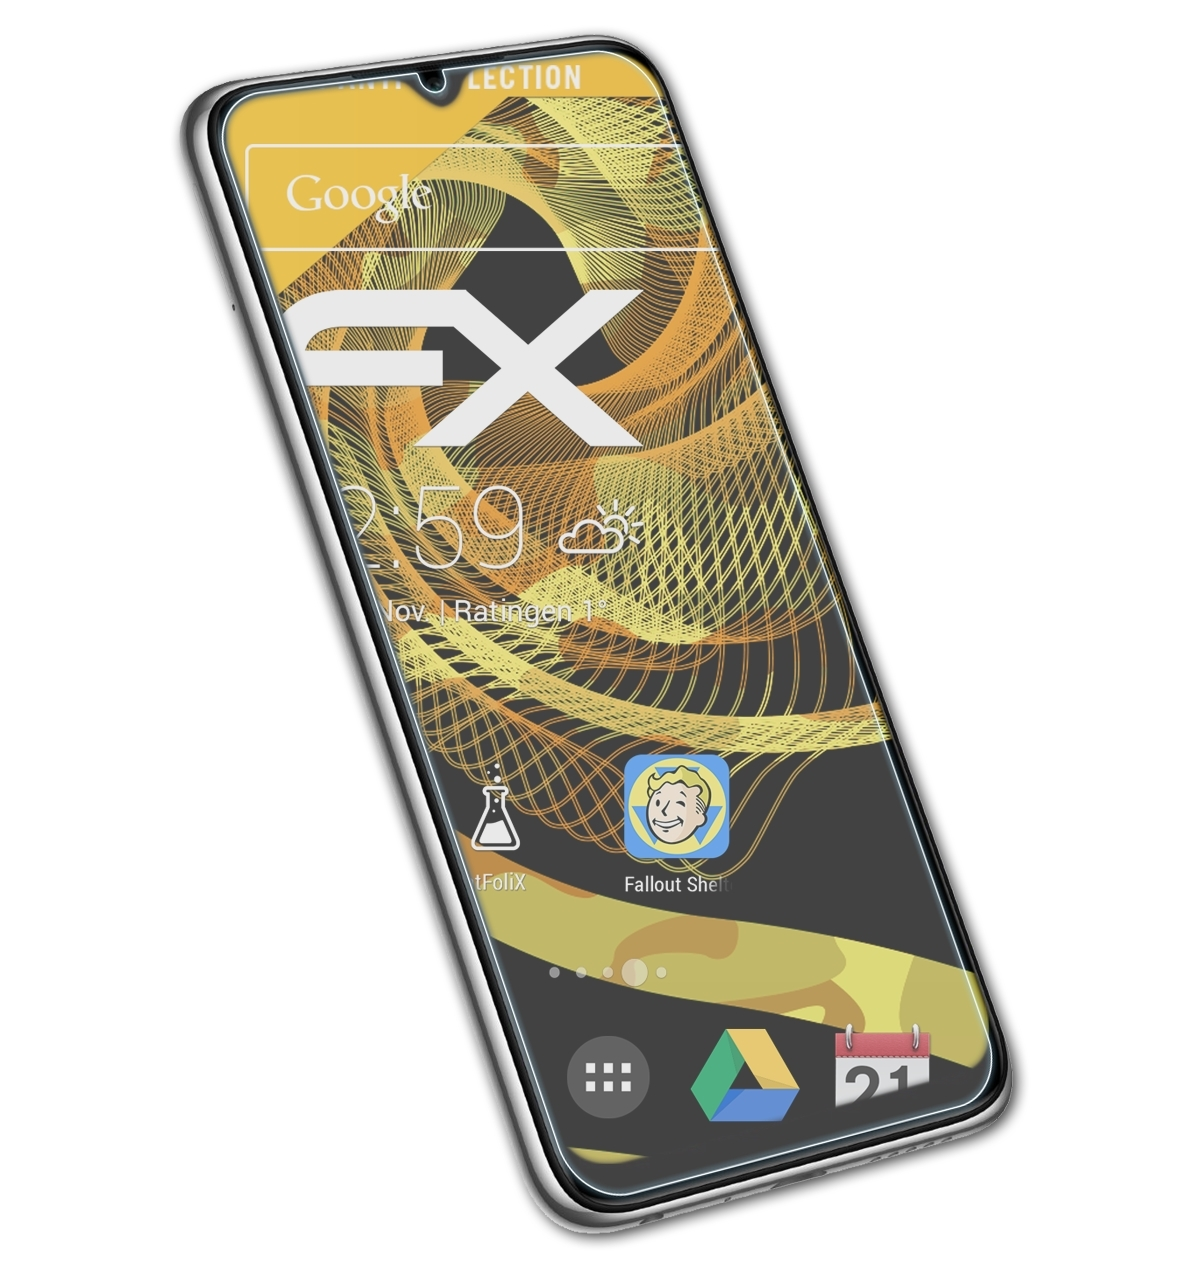 Displayschutz(für 8T) FX-Antireflex ATFOLIX Note Redmi Xiaomi 3x